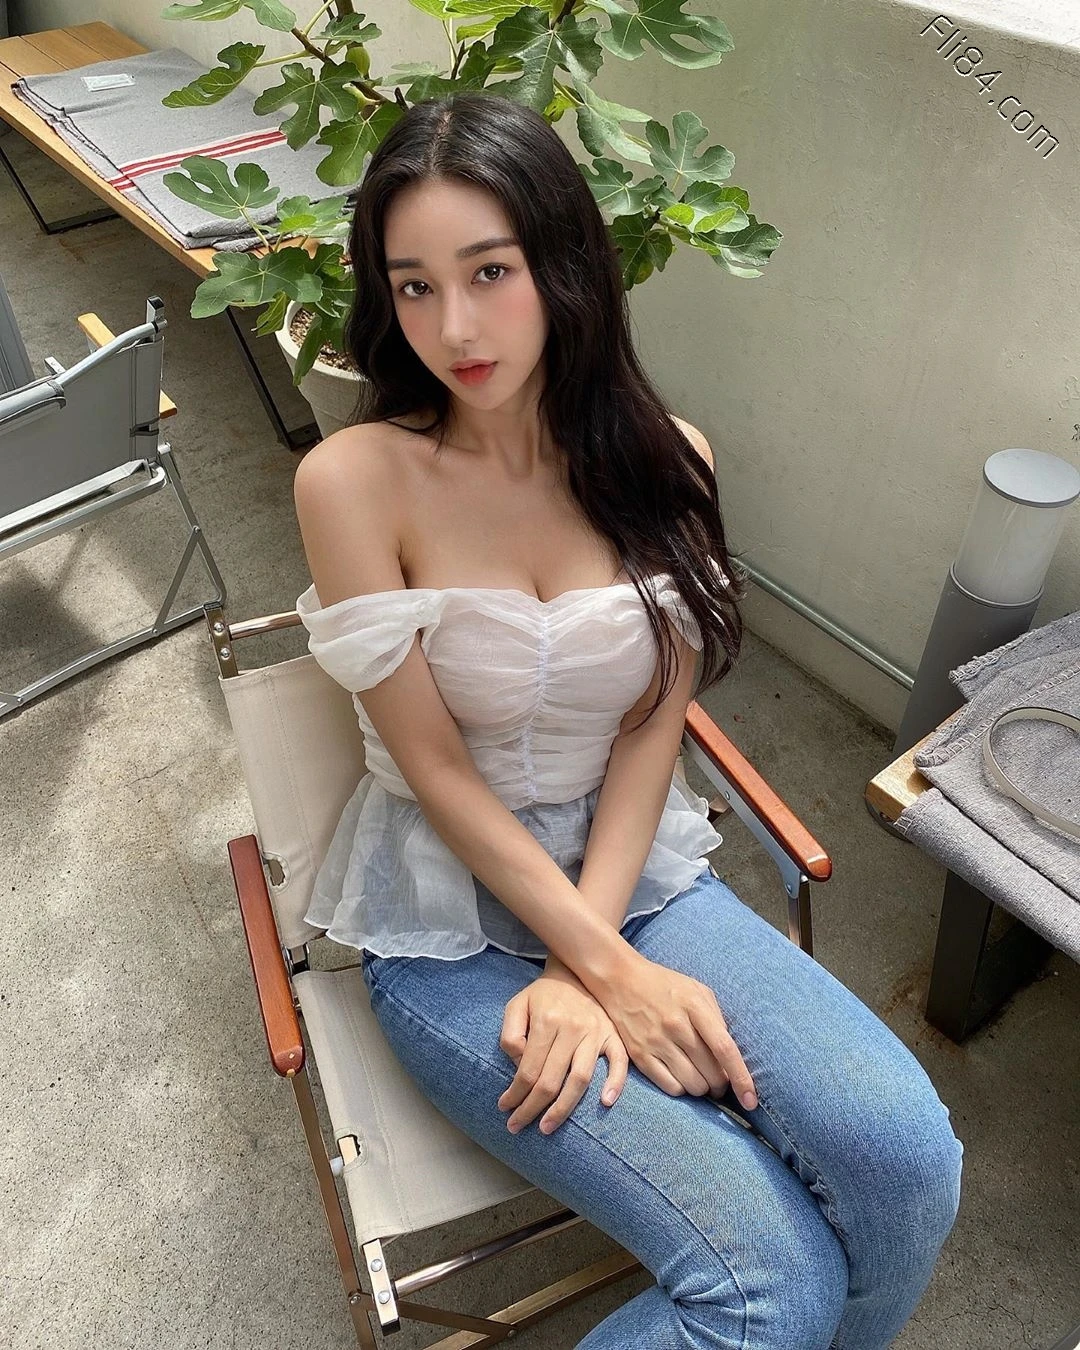 南韩内衣模特@Audrey 性感比基尼大秀美胸(10) 美女写真 热图5